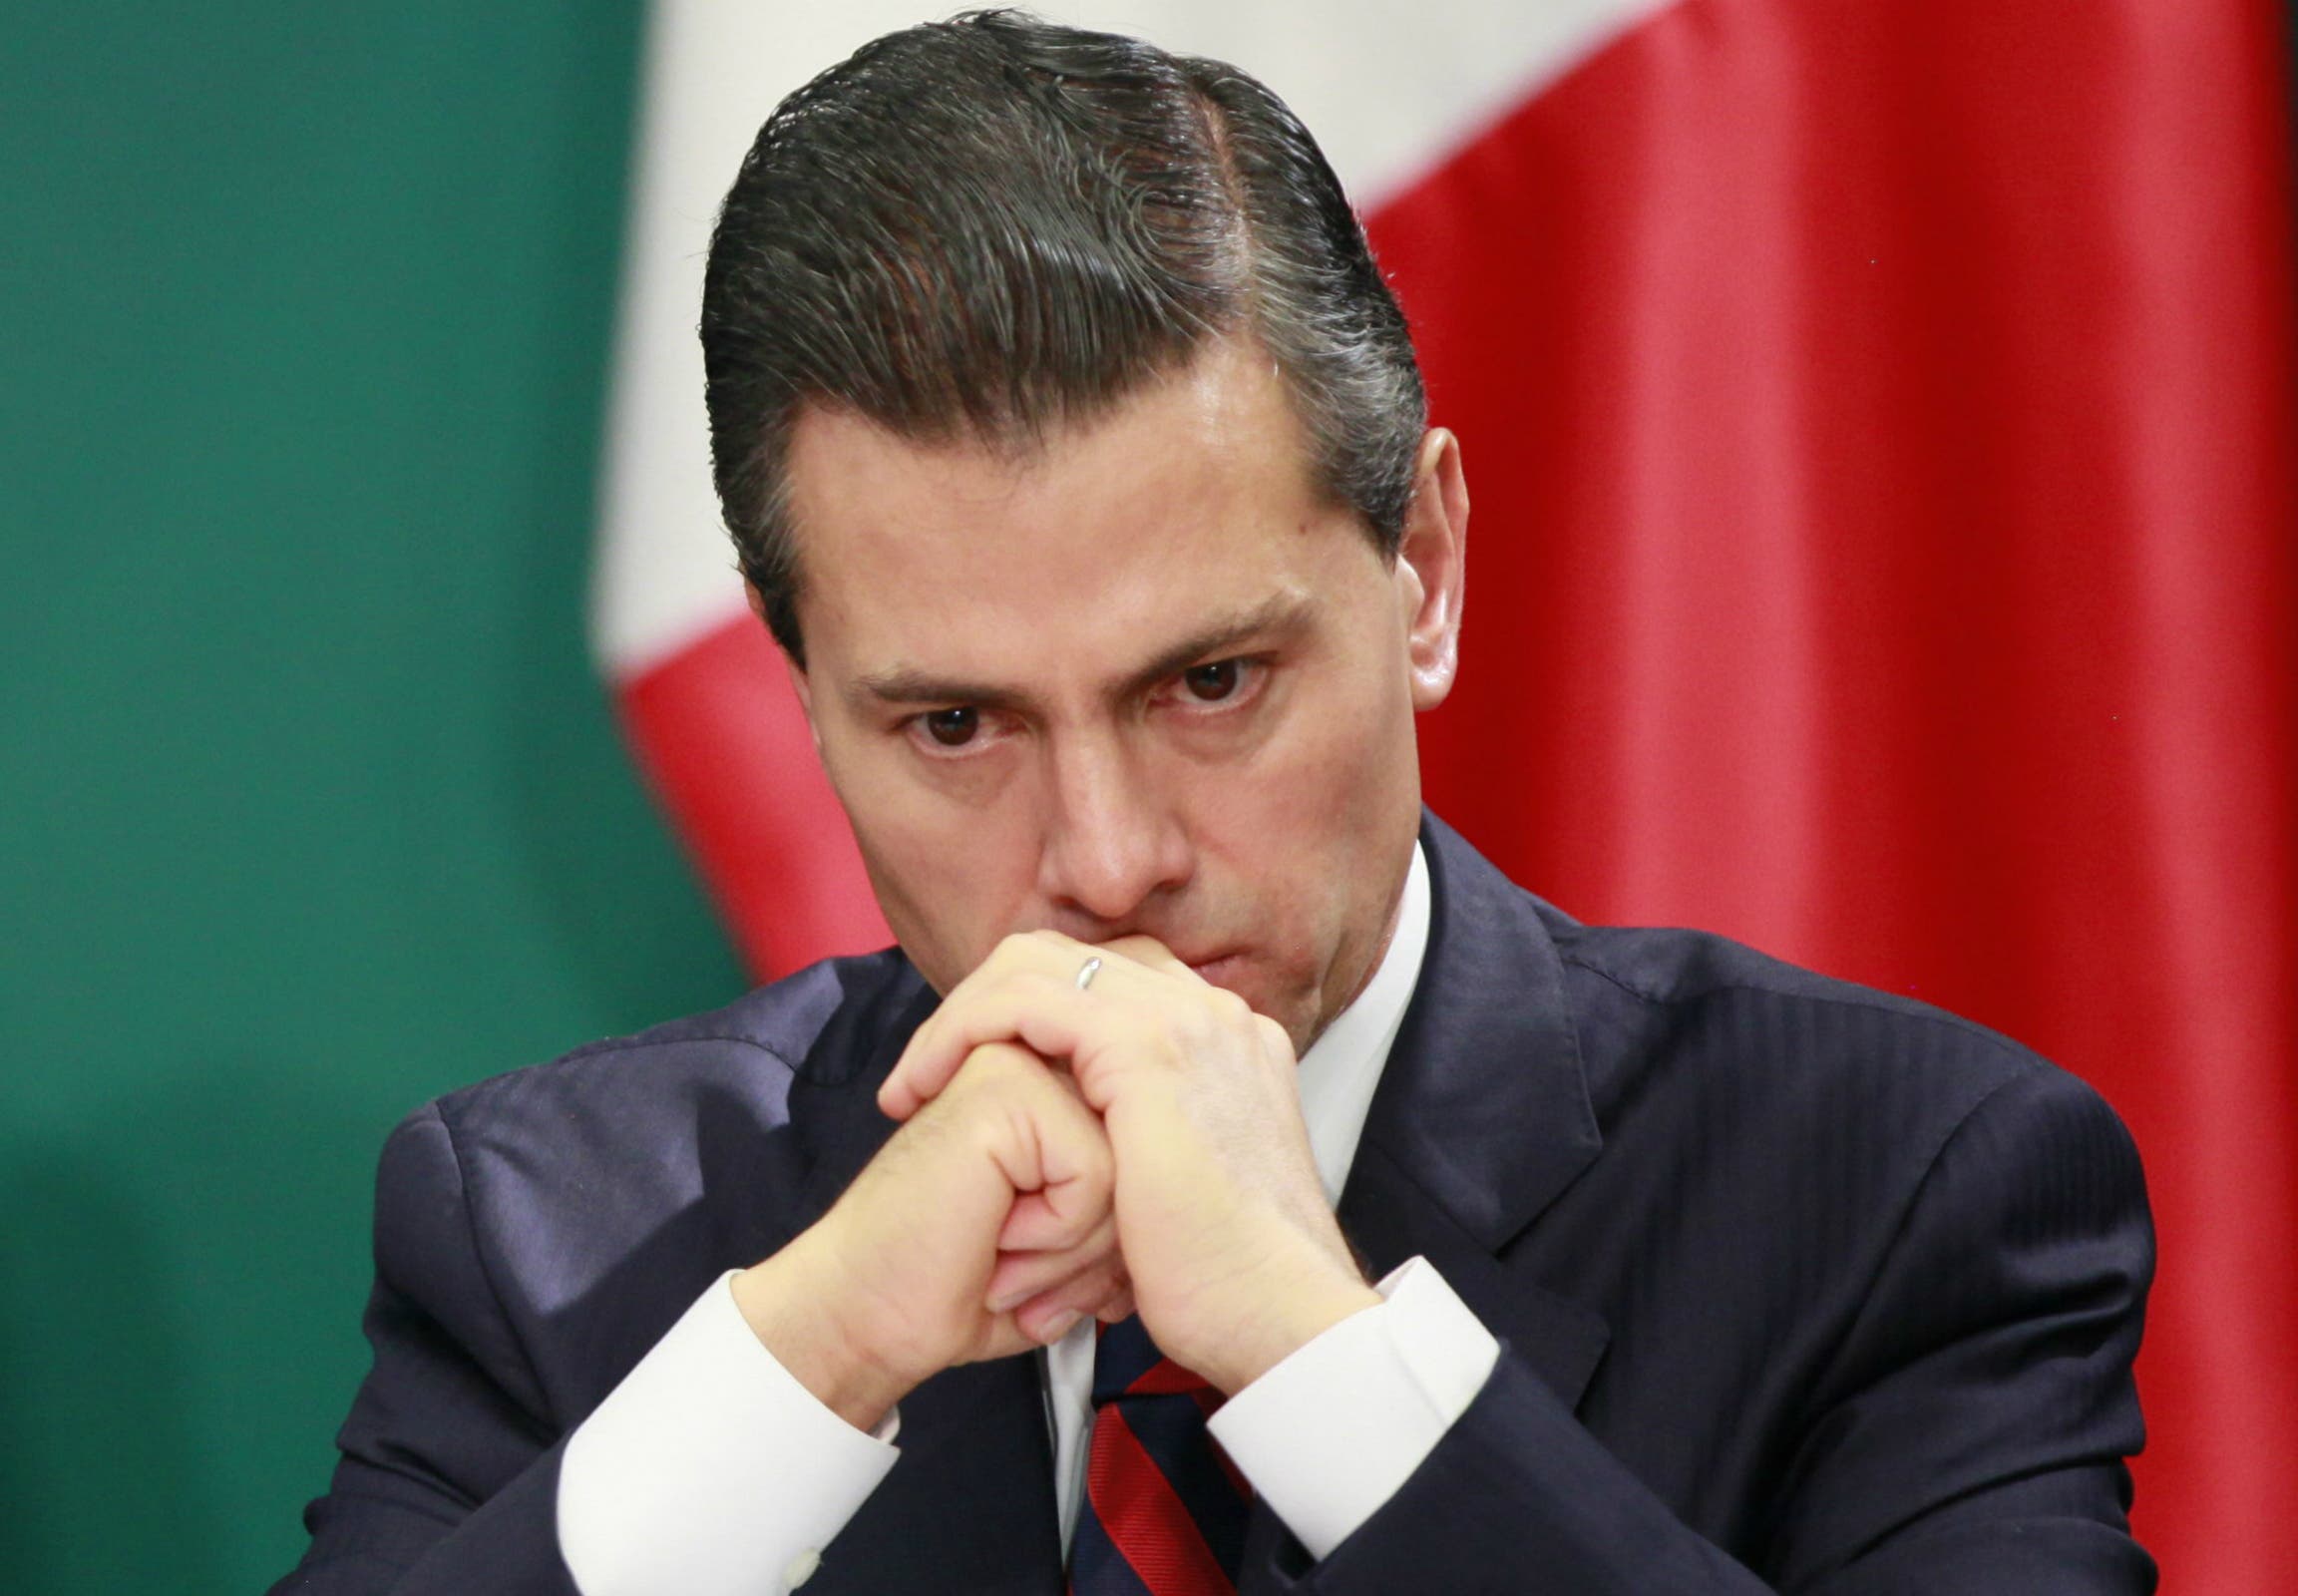 Peña Nieto plagió parte de su tesis universitaria, según una investigación